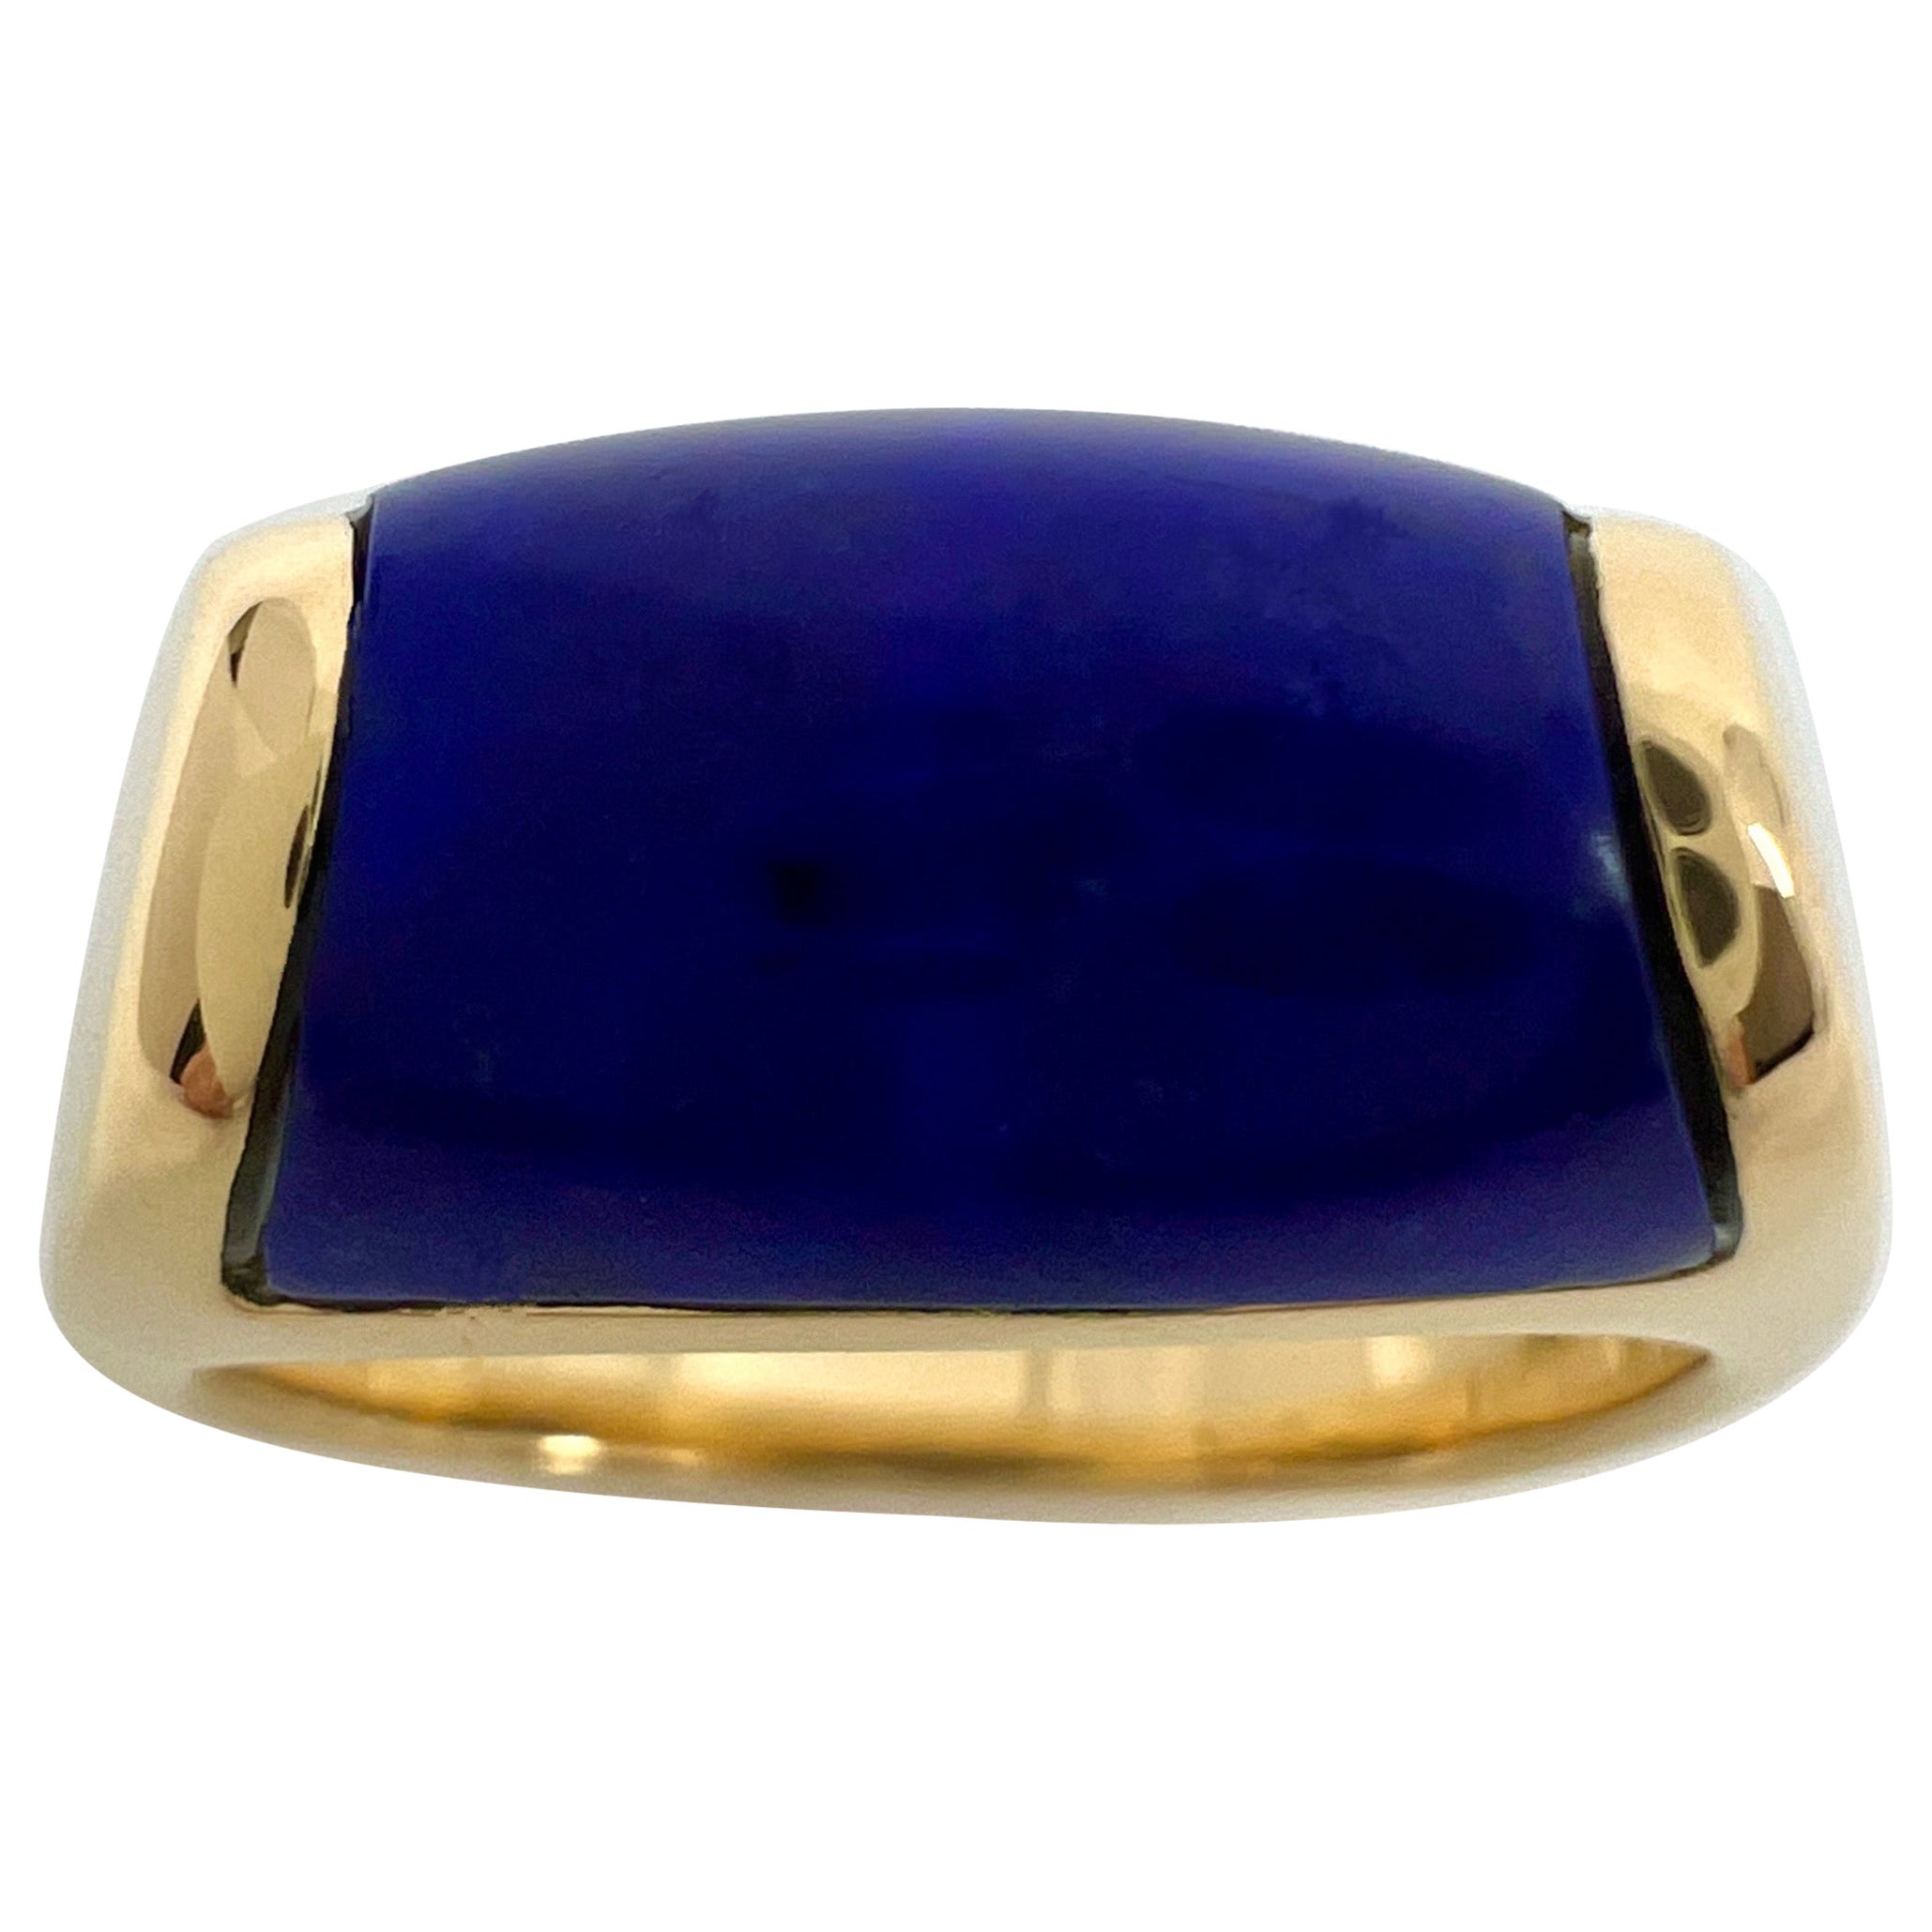 Bvlgari Bulgari Tronchetto 18k Yellow Gold Lapis Lazuli Ring with Box US6 EU52 For Sale